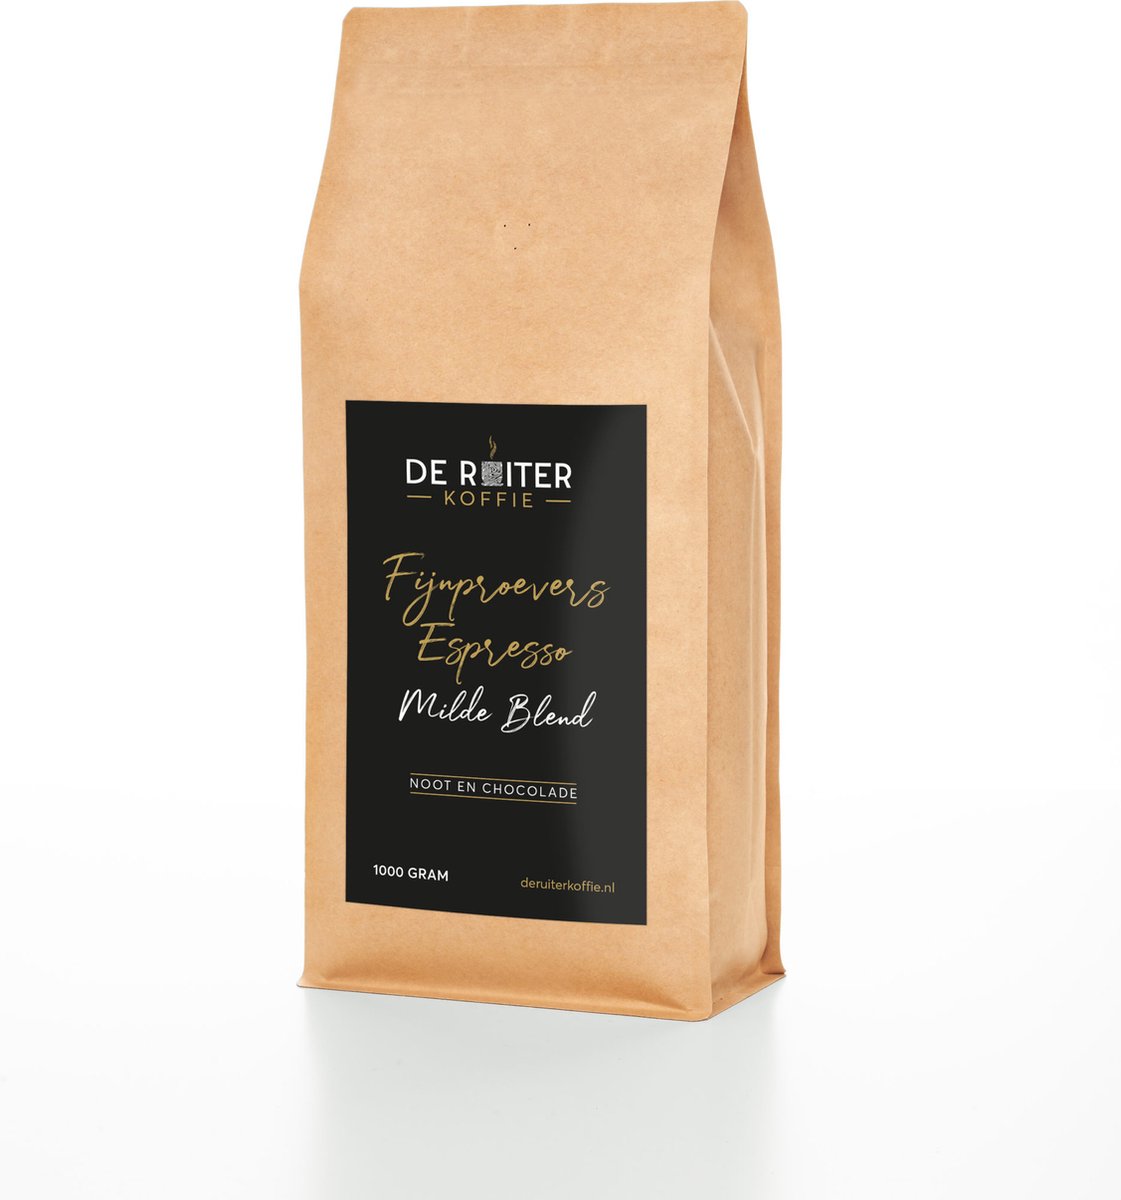 De Ruiter Koffie - Verse koffiebonen - Fijnproevers Espresso - Milde Blend - 1000 gram - Fijn gemalen